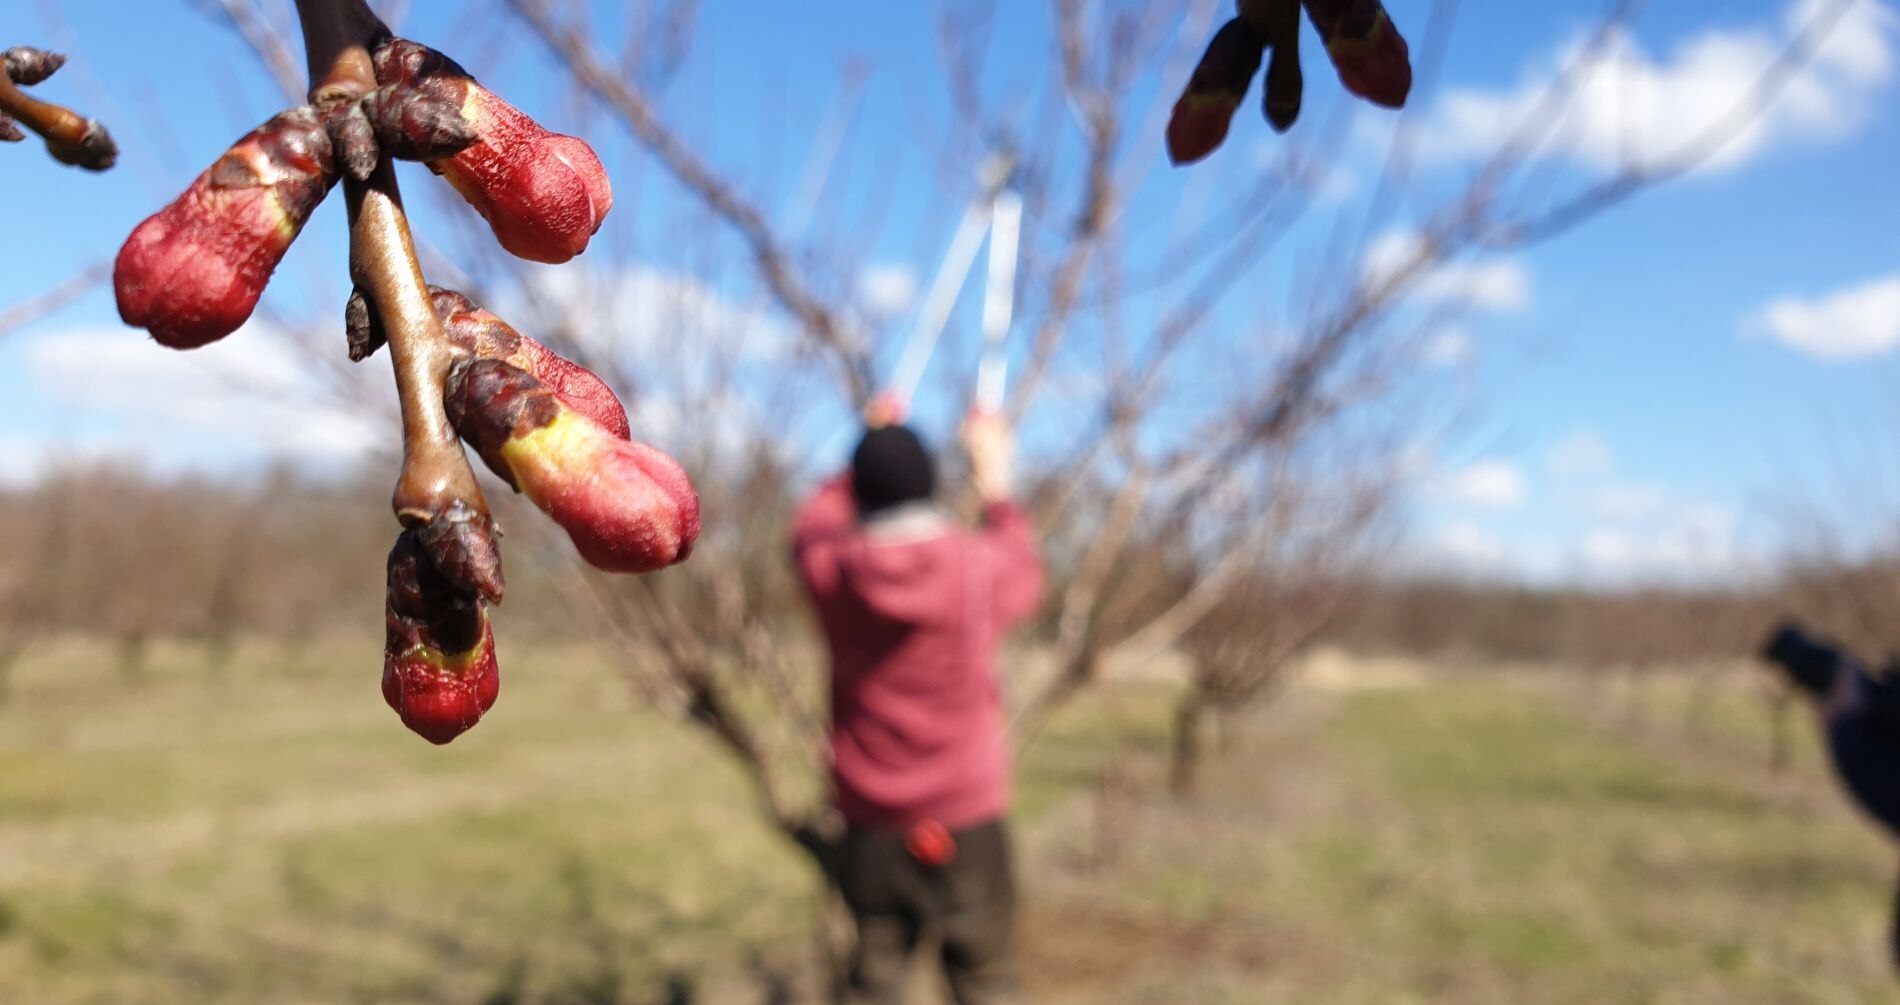 basf szőlő növényvédelmi előrejelzés 2015 cpanel